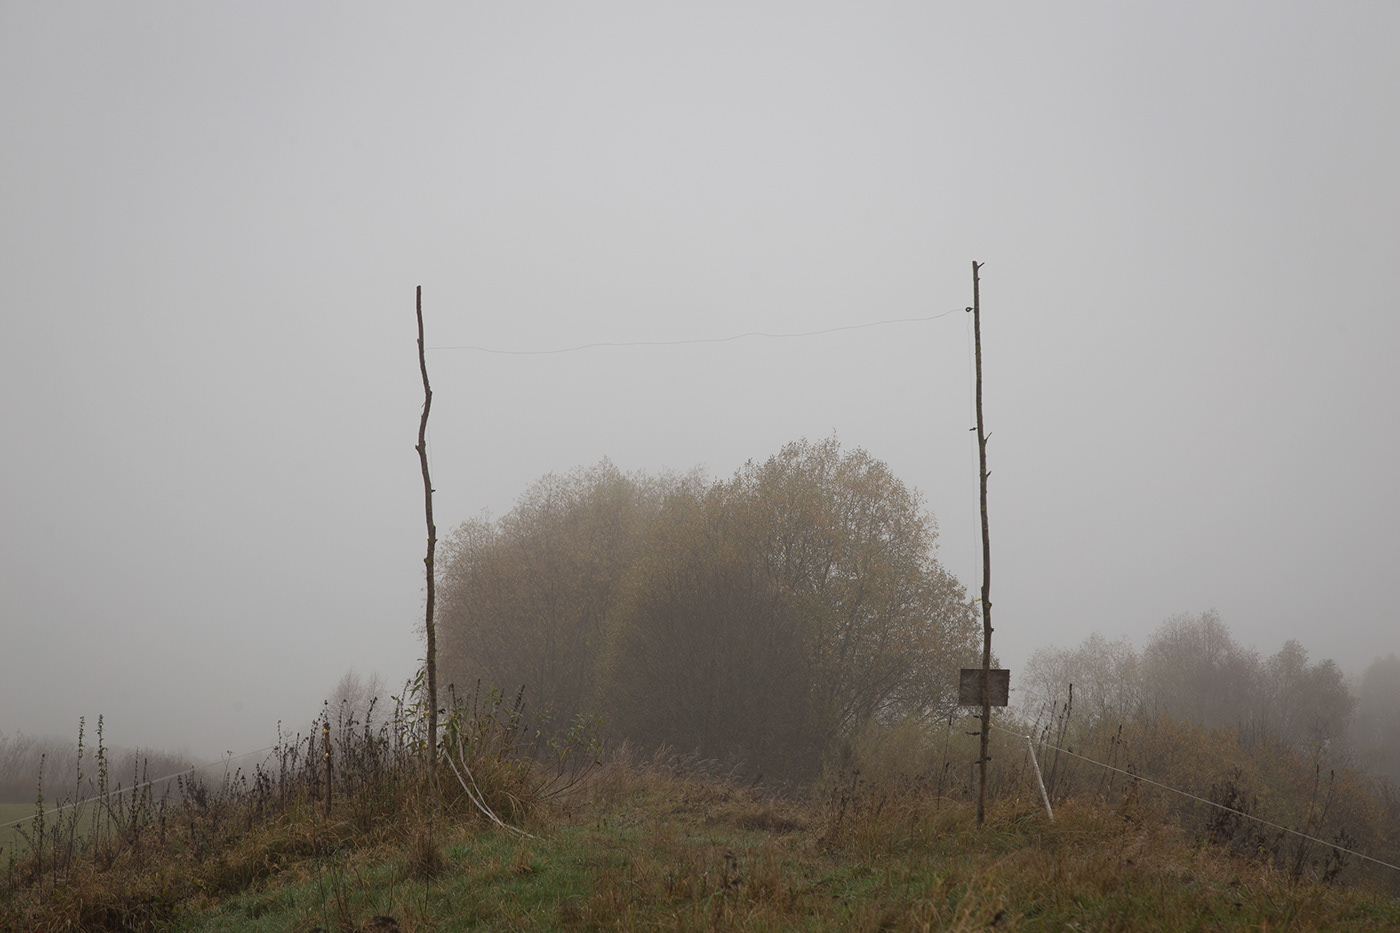 lietuva lithuania Mindaugas Buivydas Landscape Nature fog mist Tree  trees autumn